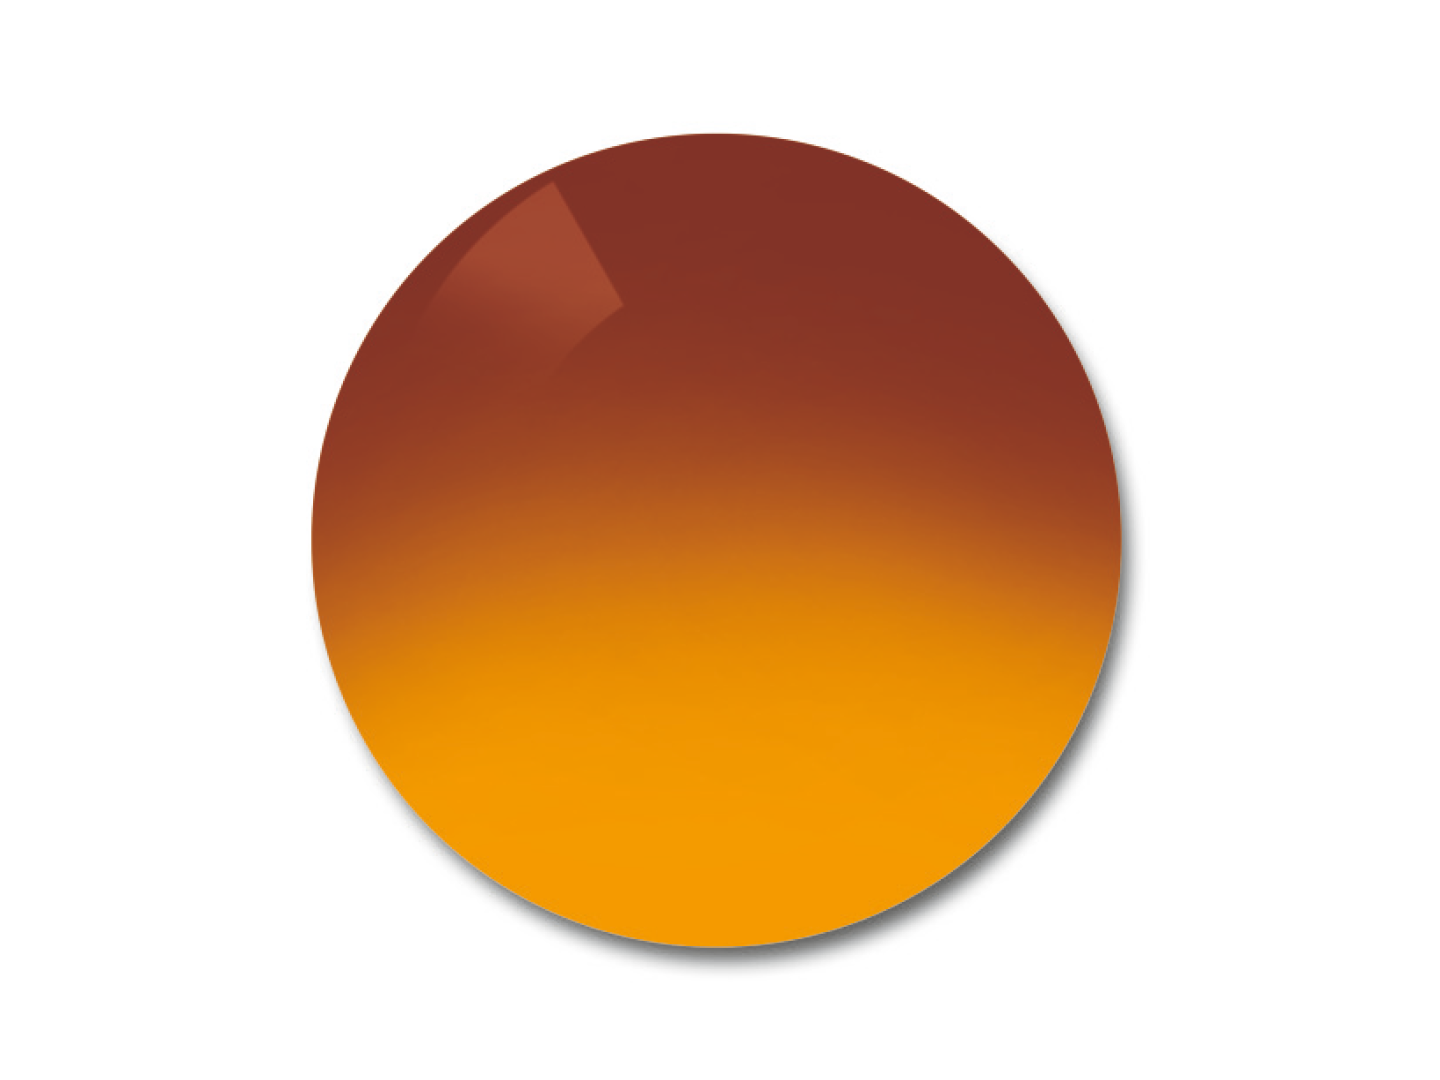 Exemplu de culoare ale nuanței de lentile ProGolf, gradient 75/25%. 